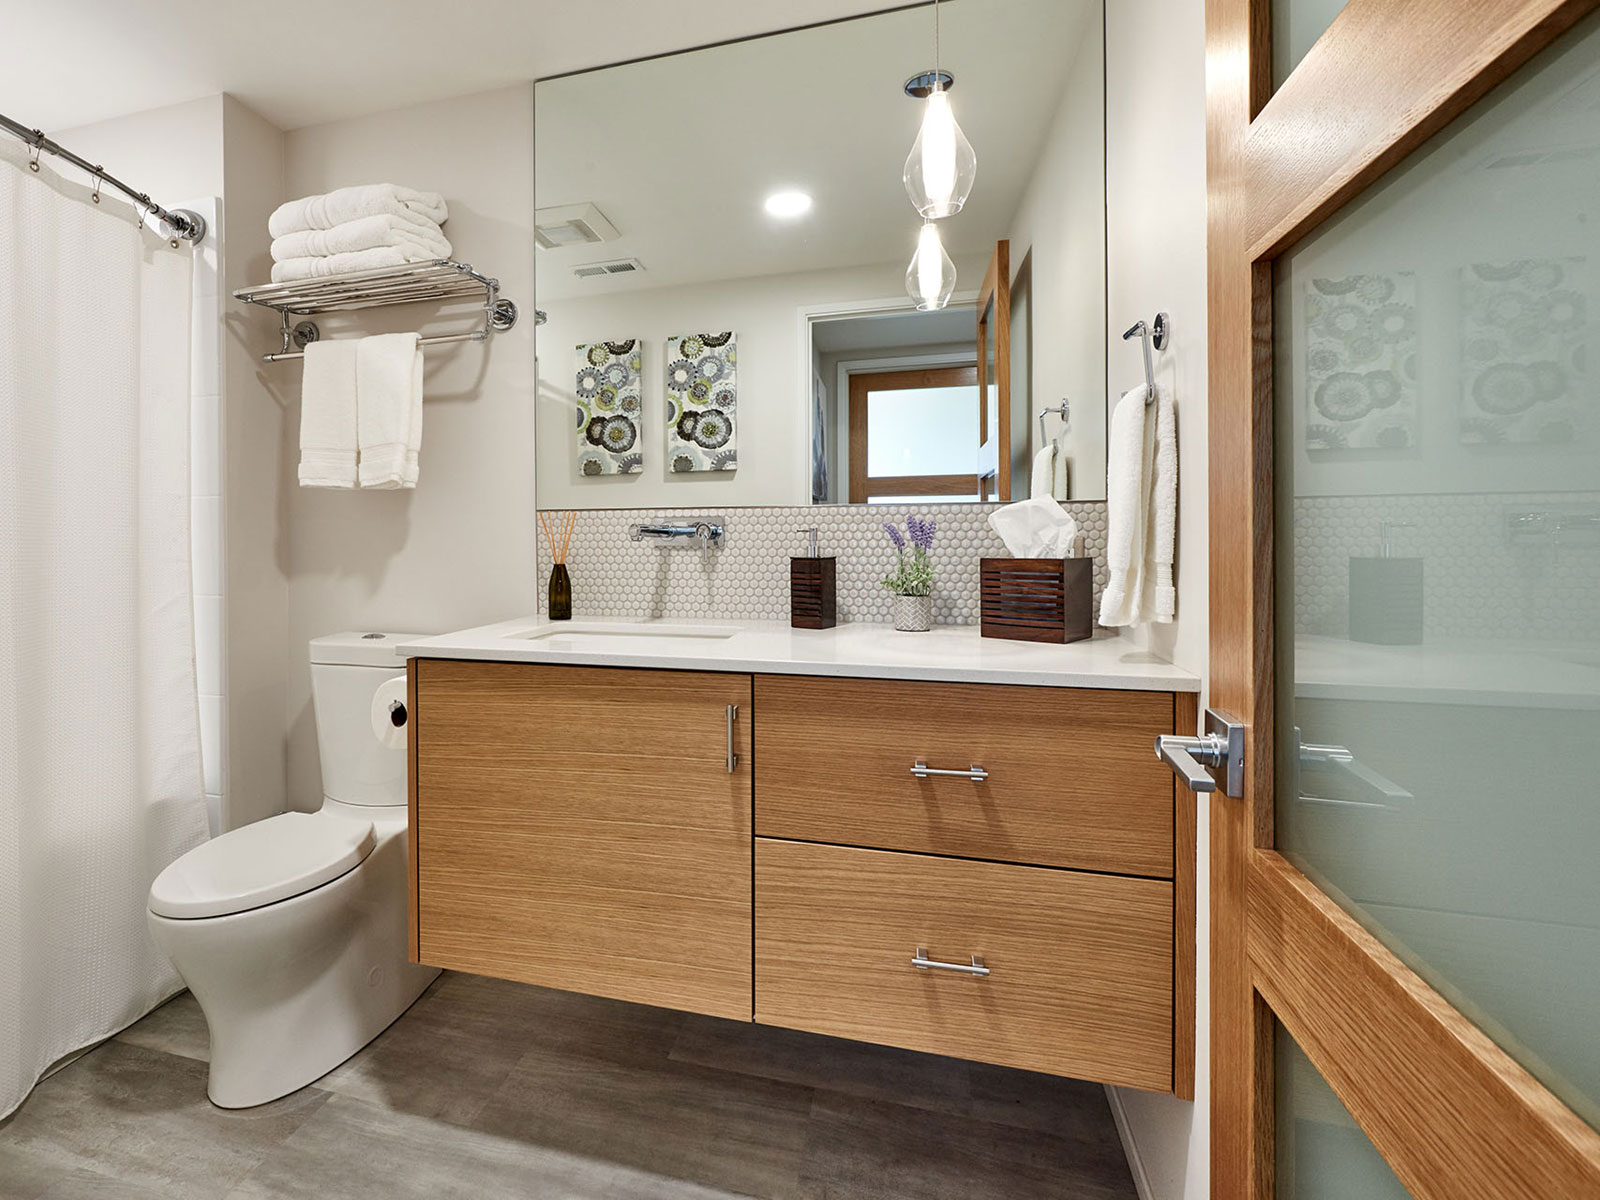 Bathroom remodel. Custom home remodel from Henderer Design + Build + Remodel